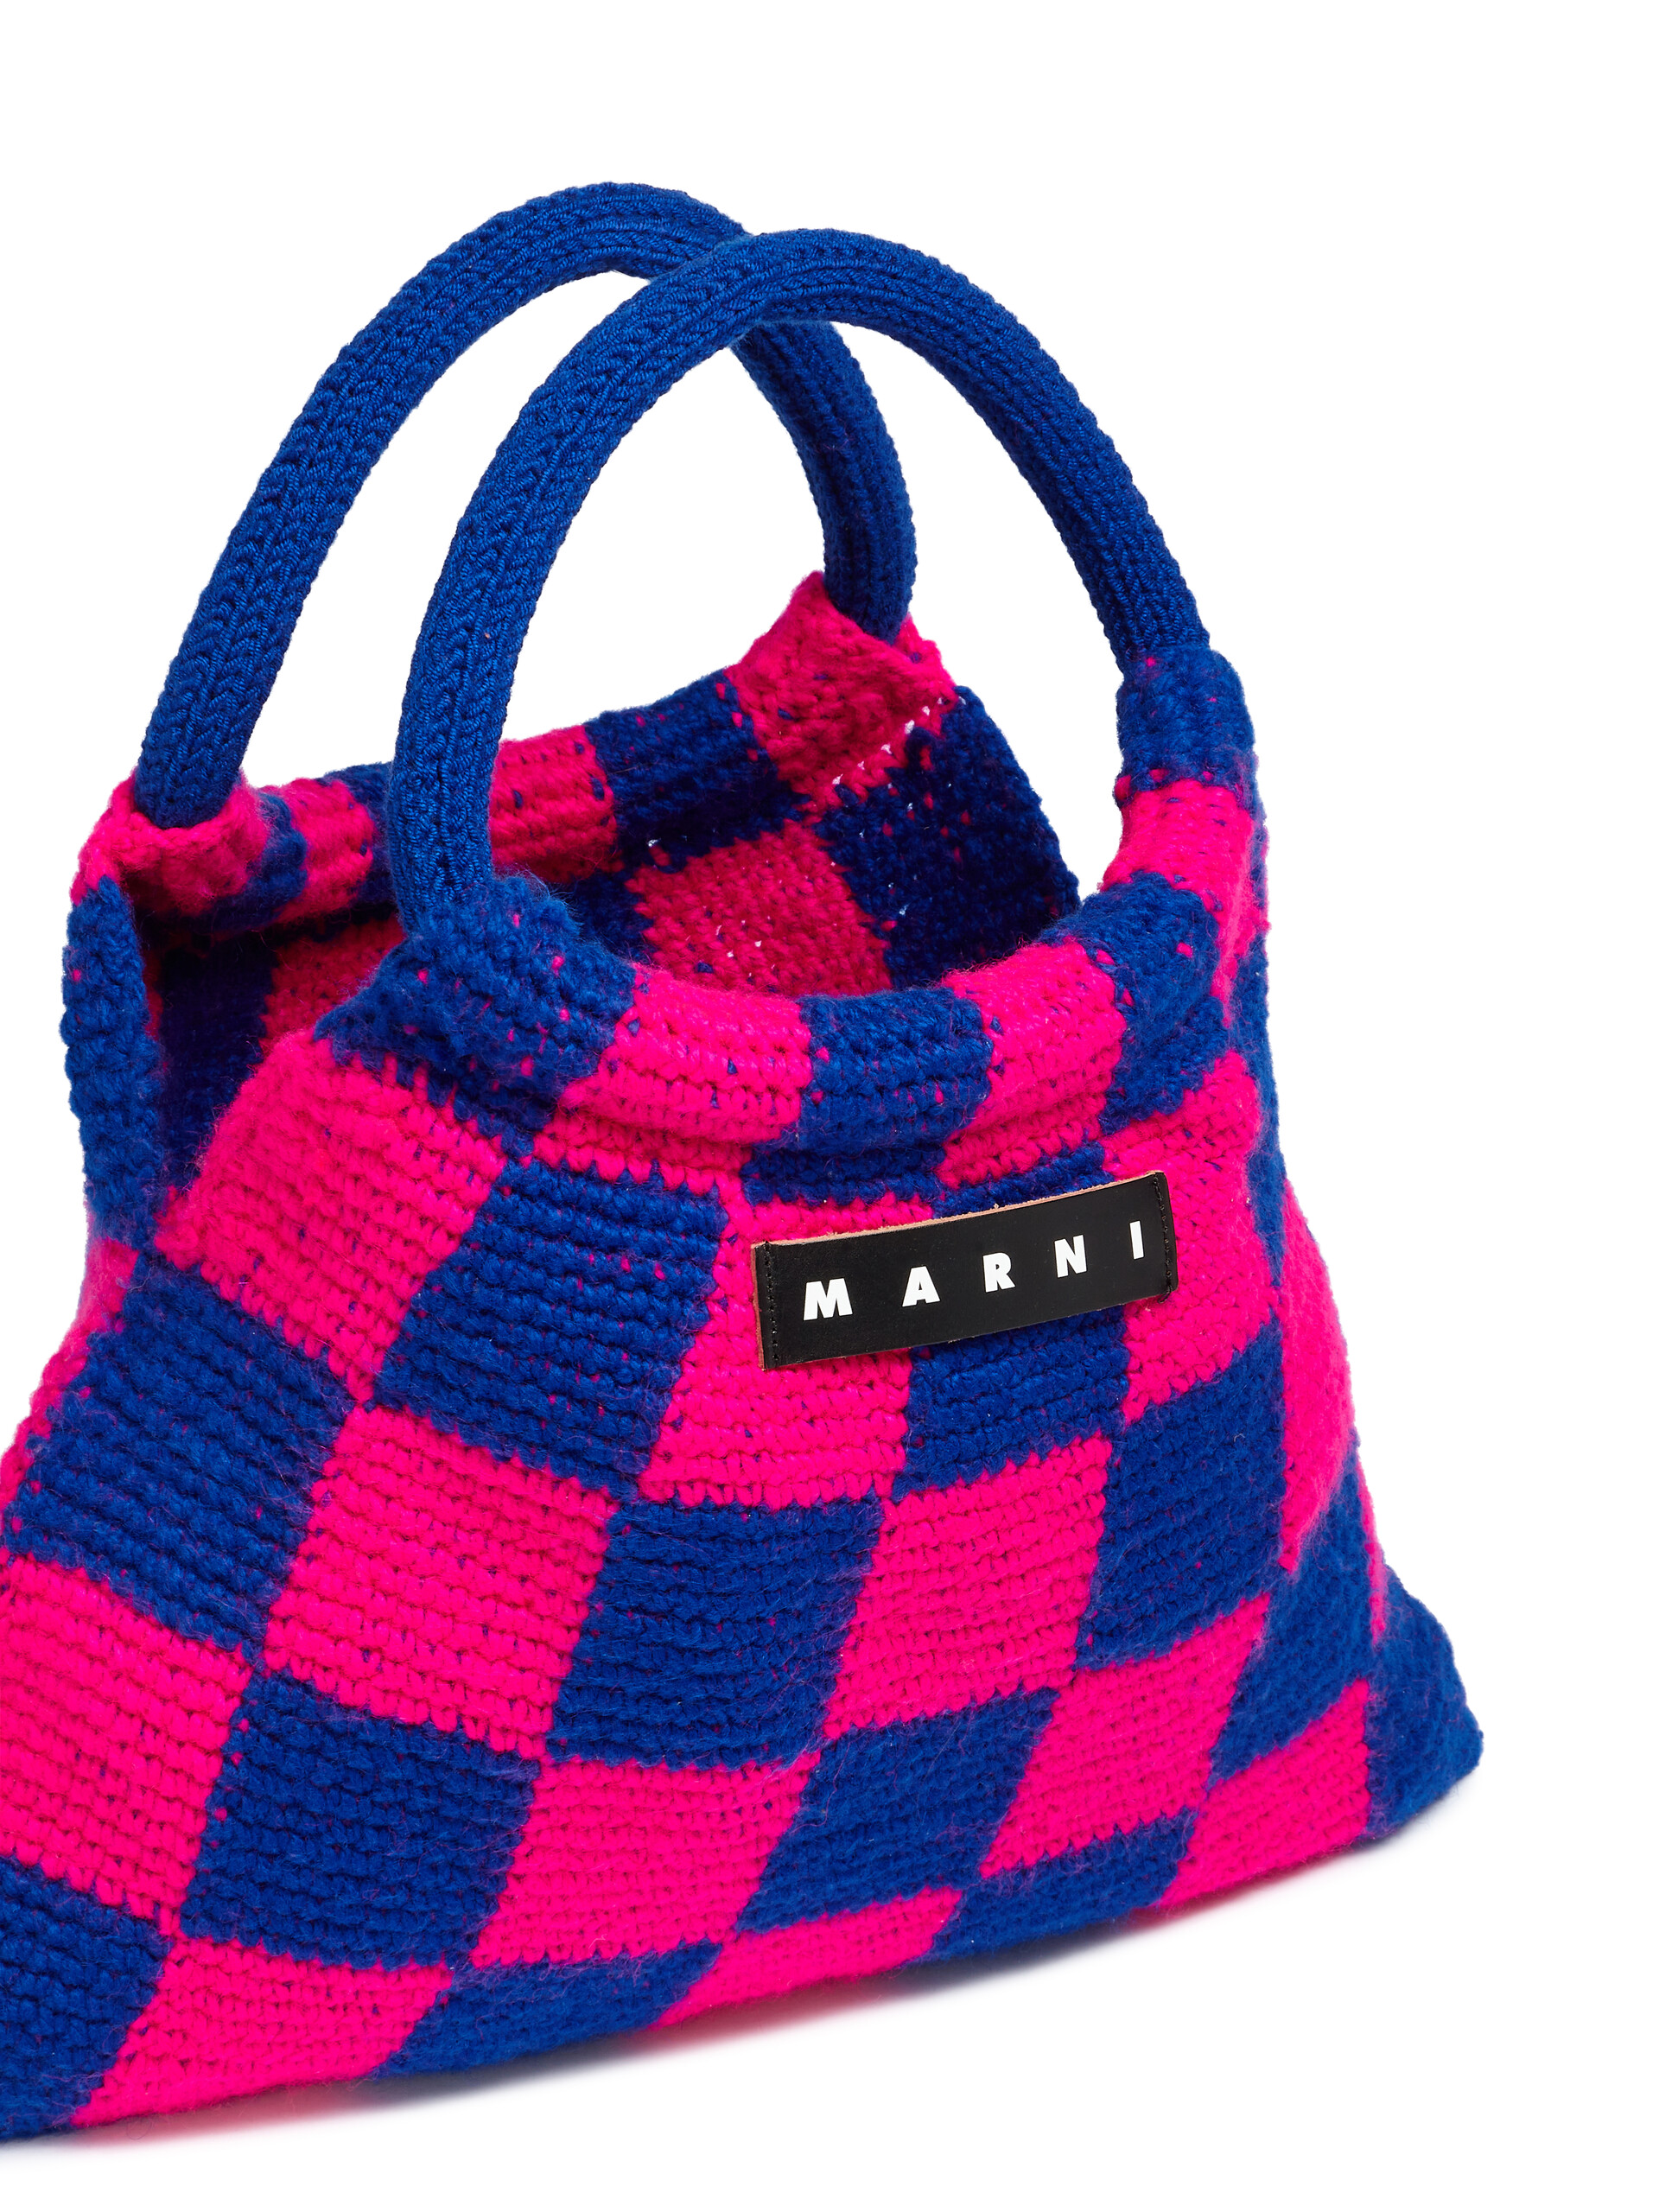 Sac MARNI MARKET GRANNY rose et bleu réalisé au crochet - Sacs cabas - Image 4